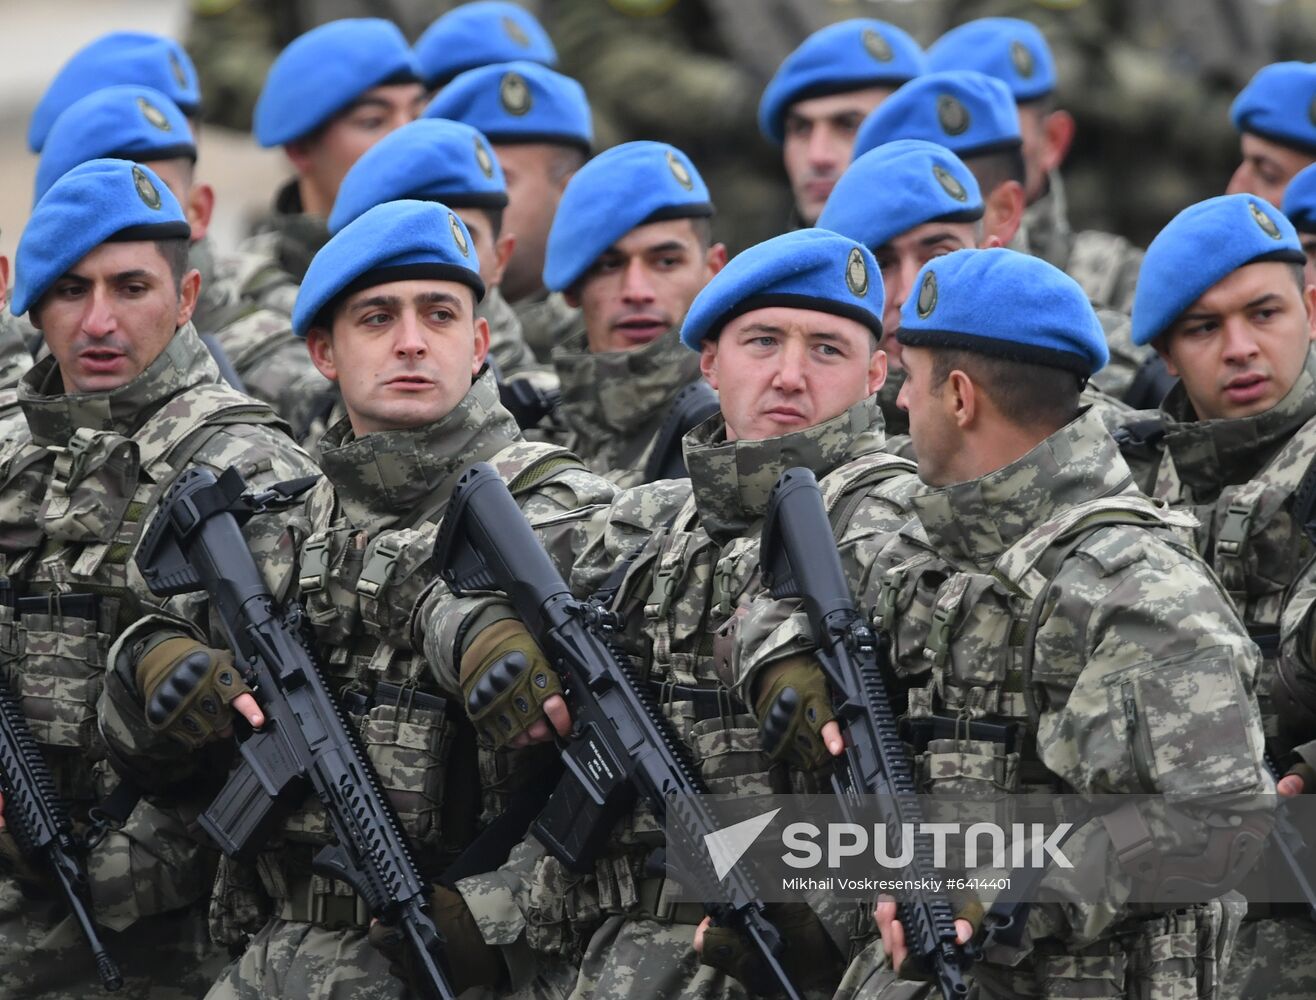 Azerbaijan Military Parade